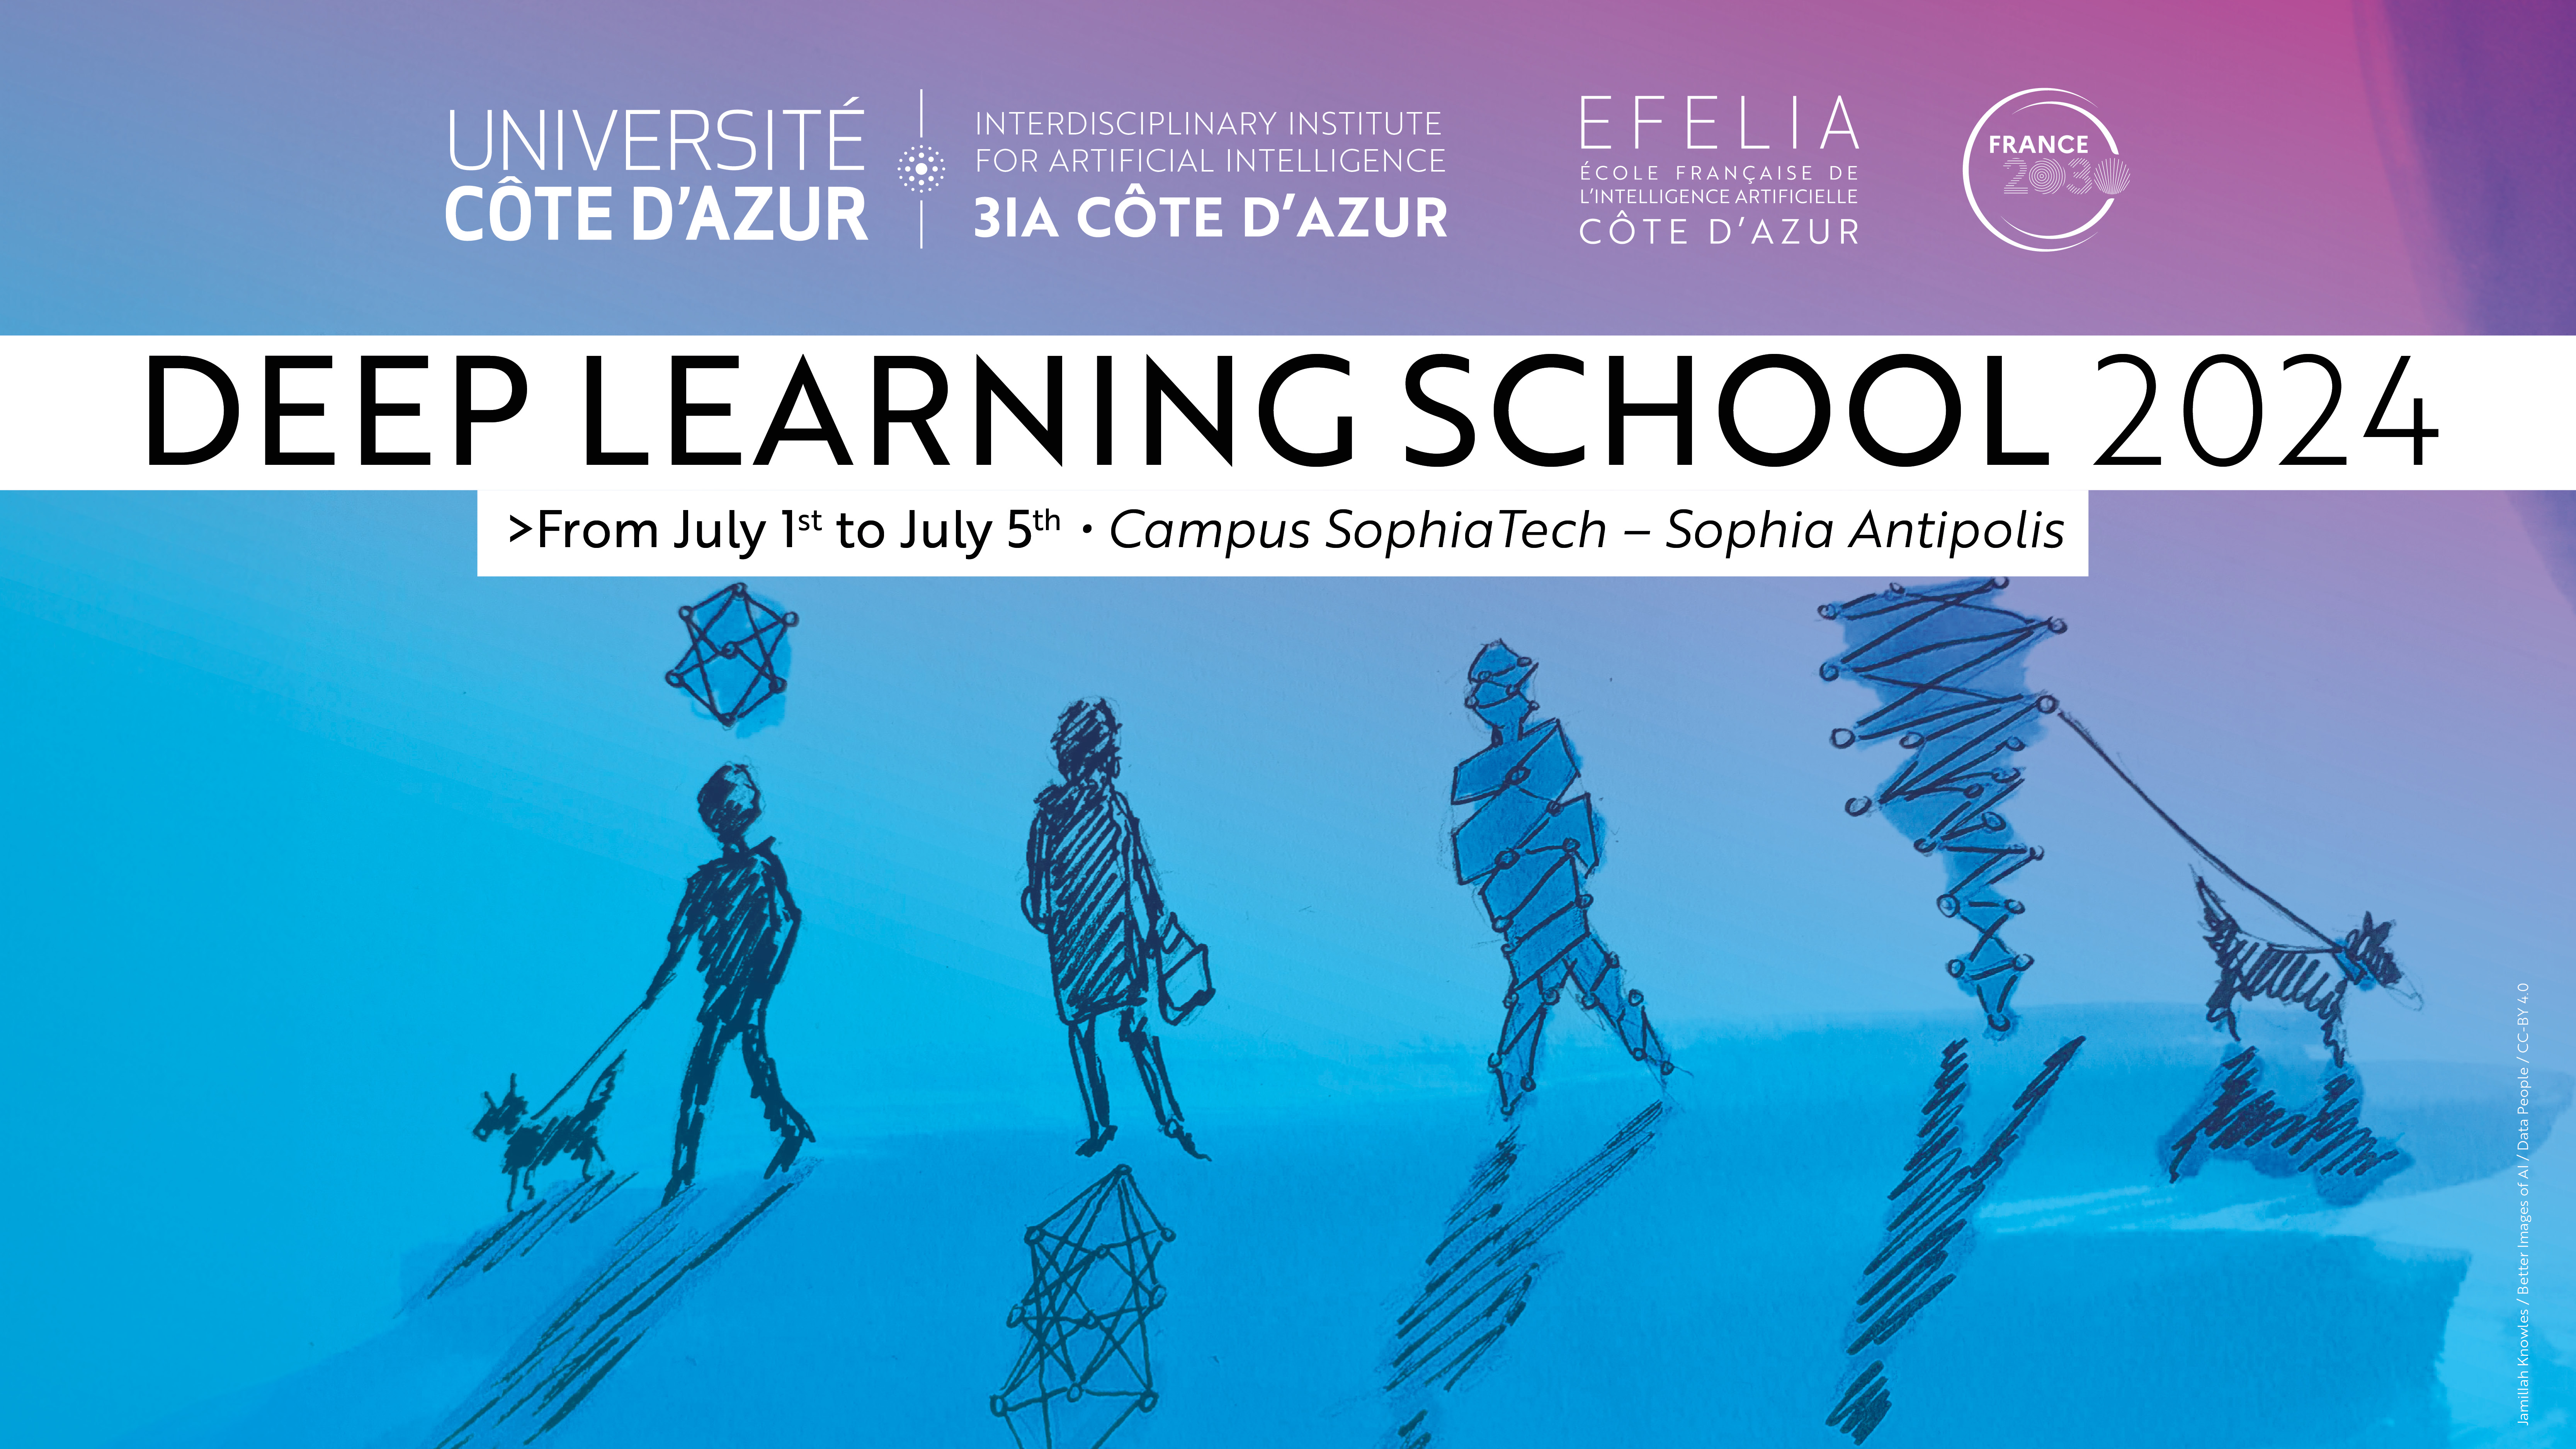 Deep Learning School 2024 | EFELIA Côte d'Azur